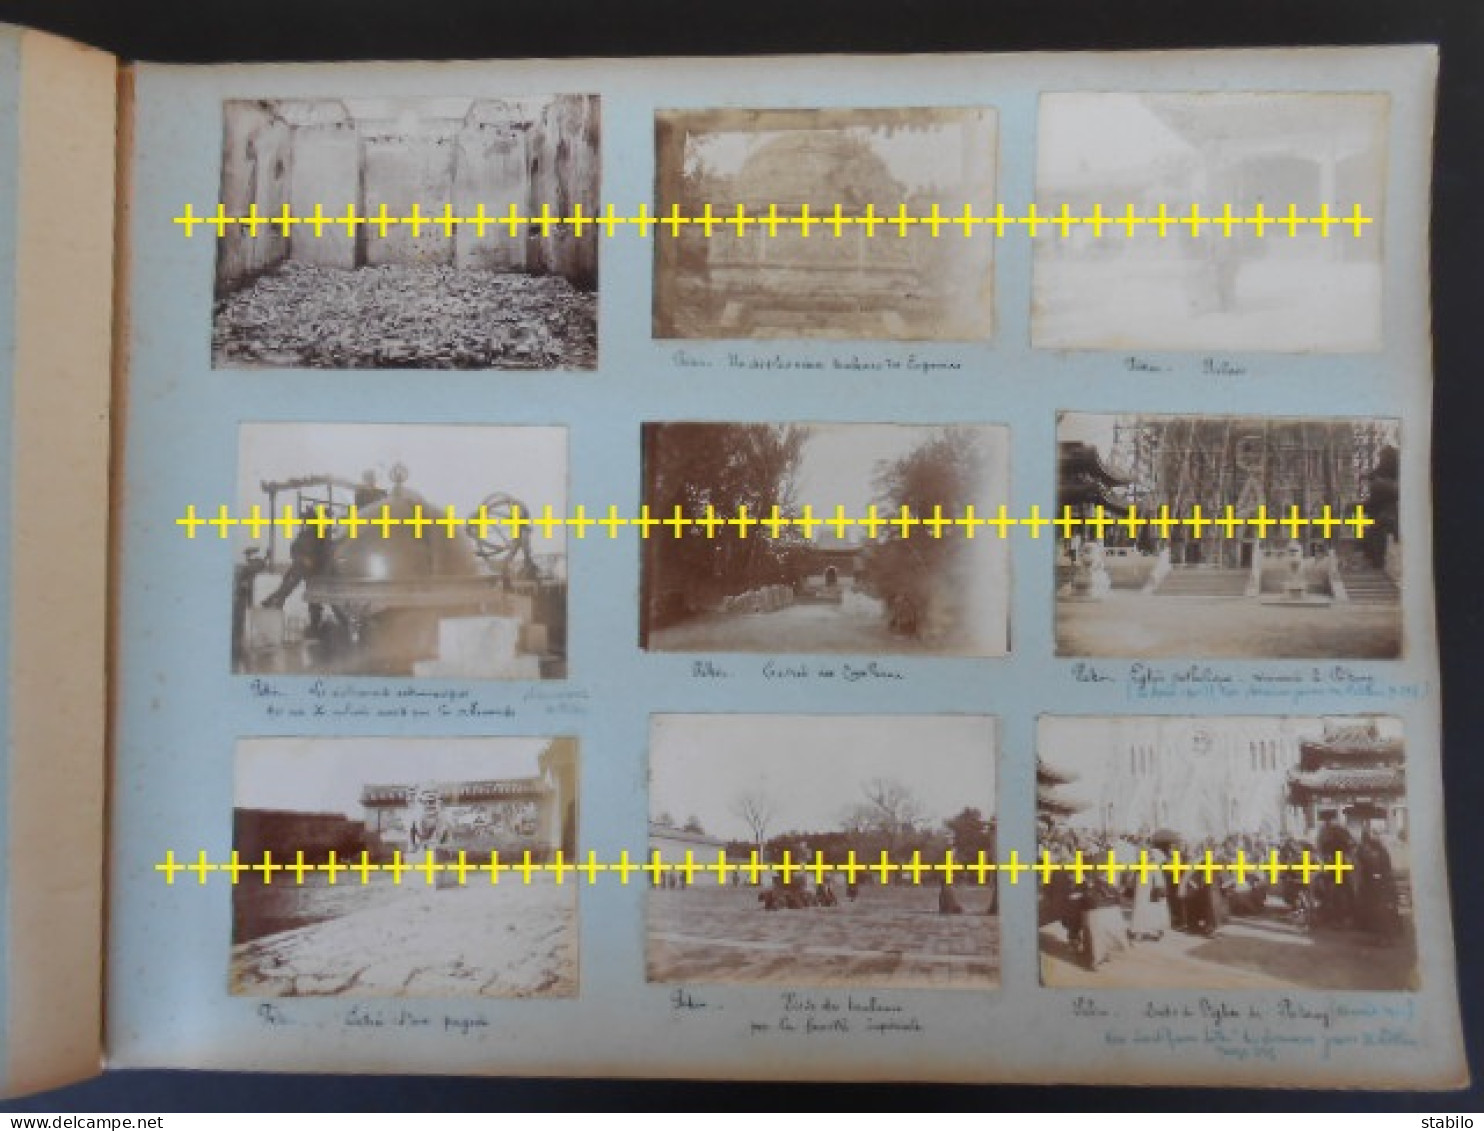 CHINE 2 ALBUMS (468 PHOTOS) DE L'EXPEDITION FRANCAISE 1900-1902 - 6 PHOTOGRAPHIES AVEC PIERRE LOTI - VOIR LA DESCRIPTION